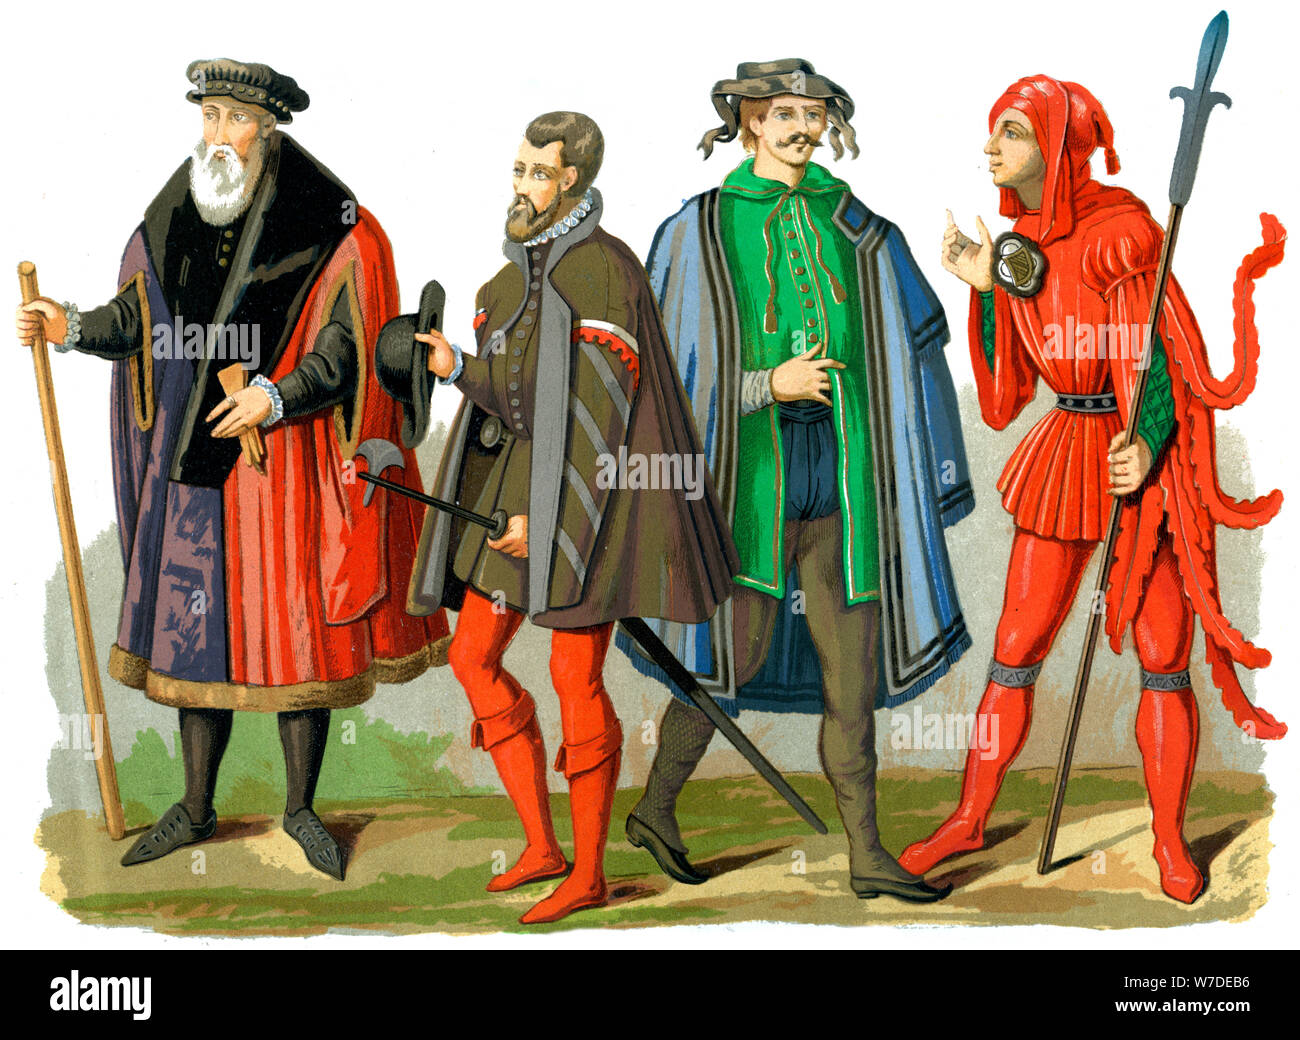 Costumi tedesco, XV-XVI secolo (1849).Artista: Edward può Foto Stock